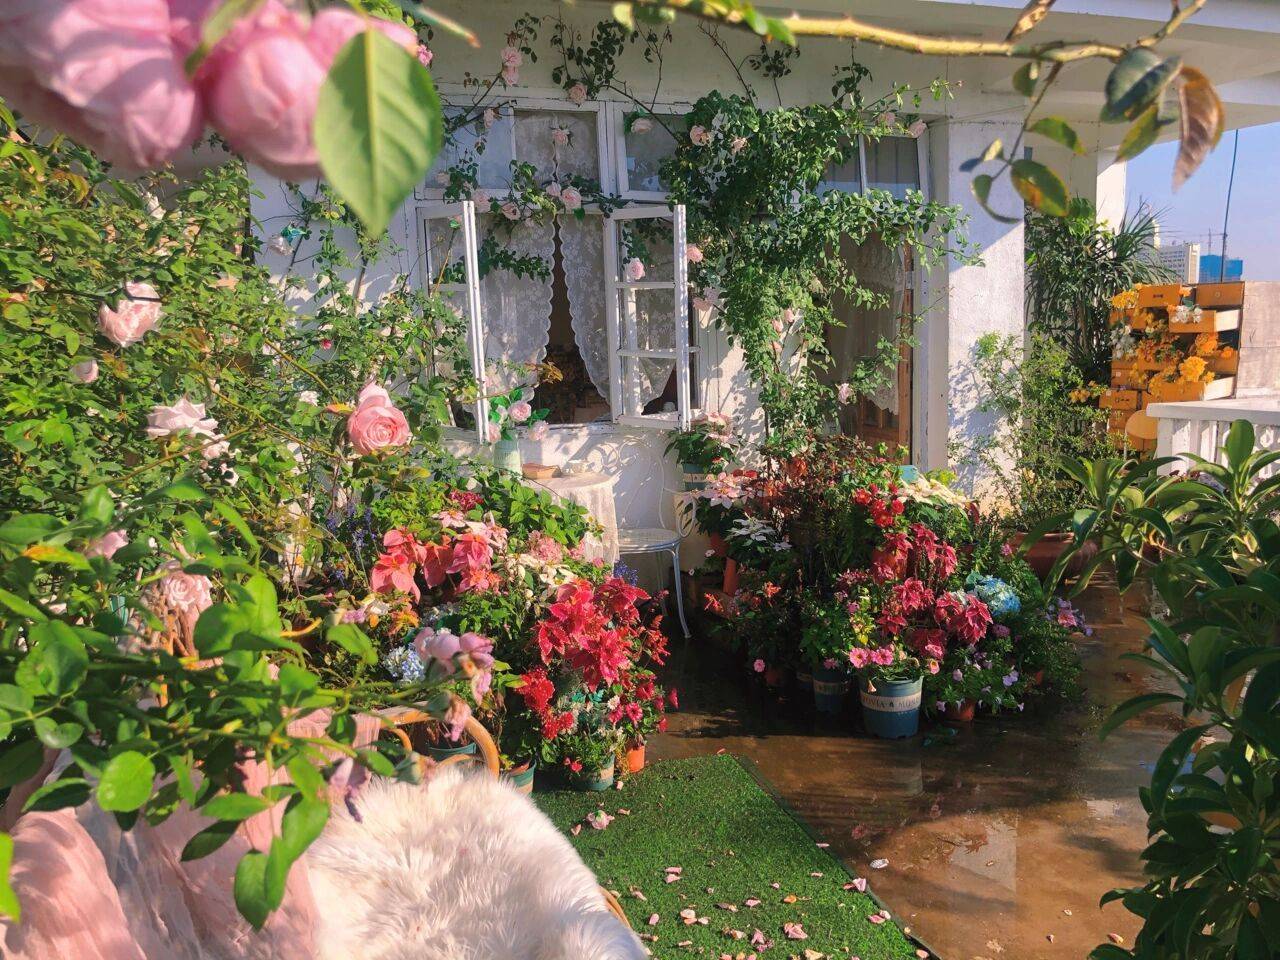 Vườn hoa hồng là nơi thơ mộng nhất trong mỗi khu vườn, với những bông hoa thơm ngát và lãng mạn. Hãy đến và khám phá vườn hoa hồng để tận hưởng cảm giác thư thái và tình yêu trong tự nhiên.